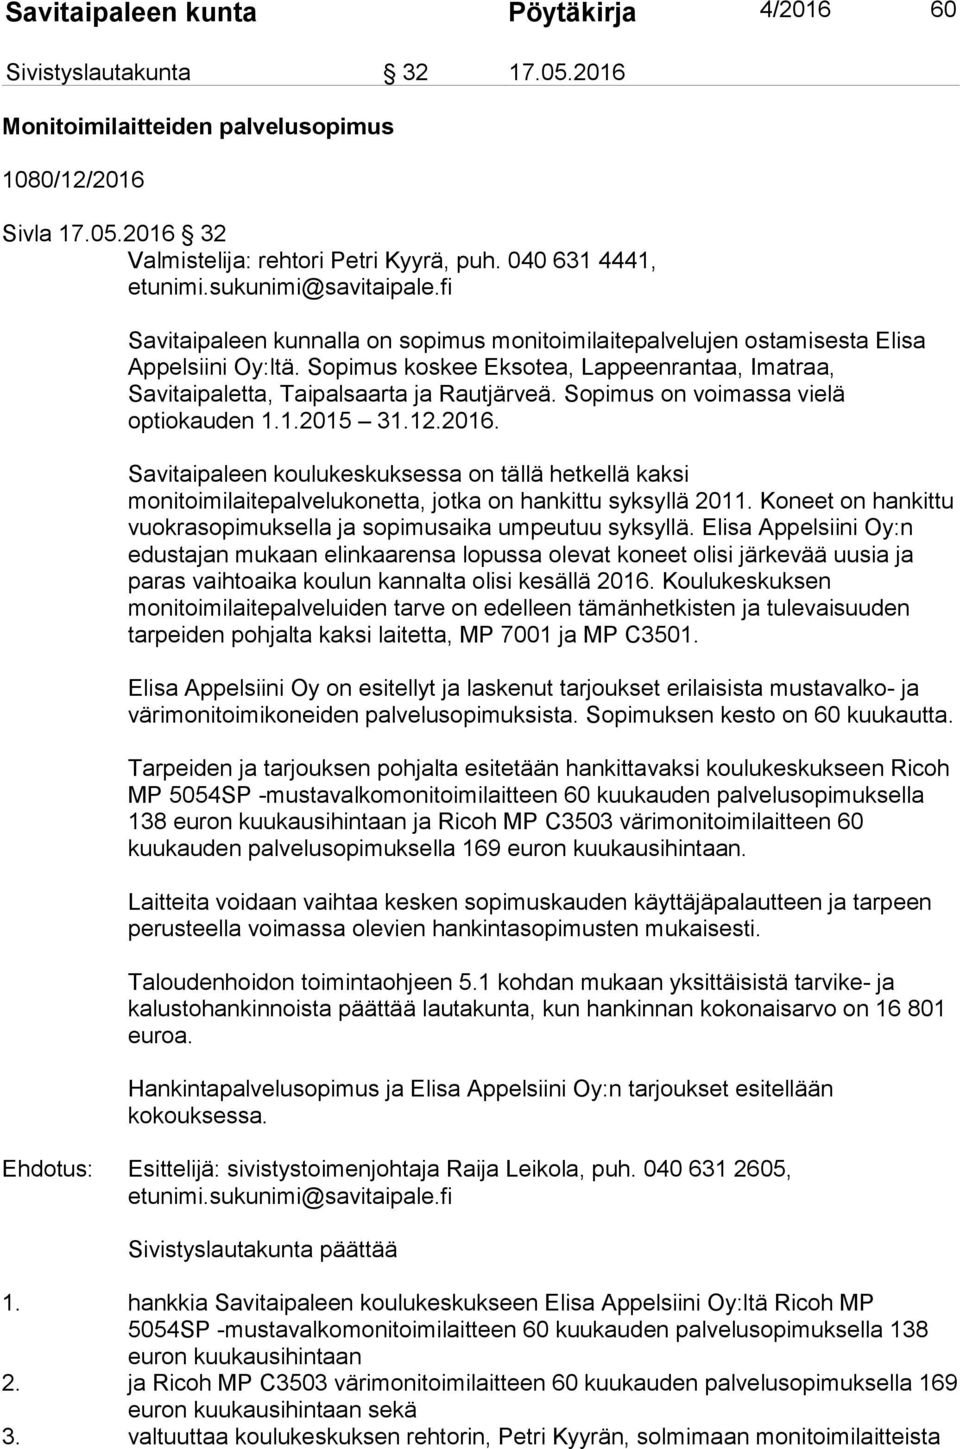 Sopimus koskee Eksotea, Lappeenrantaa, Imatraa, Savitaipaletta, Taipalsaarta ja Rautjärveä. Sopimus on voimassa vielä optiokauden 1.1.2015 31.12.2016.